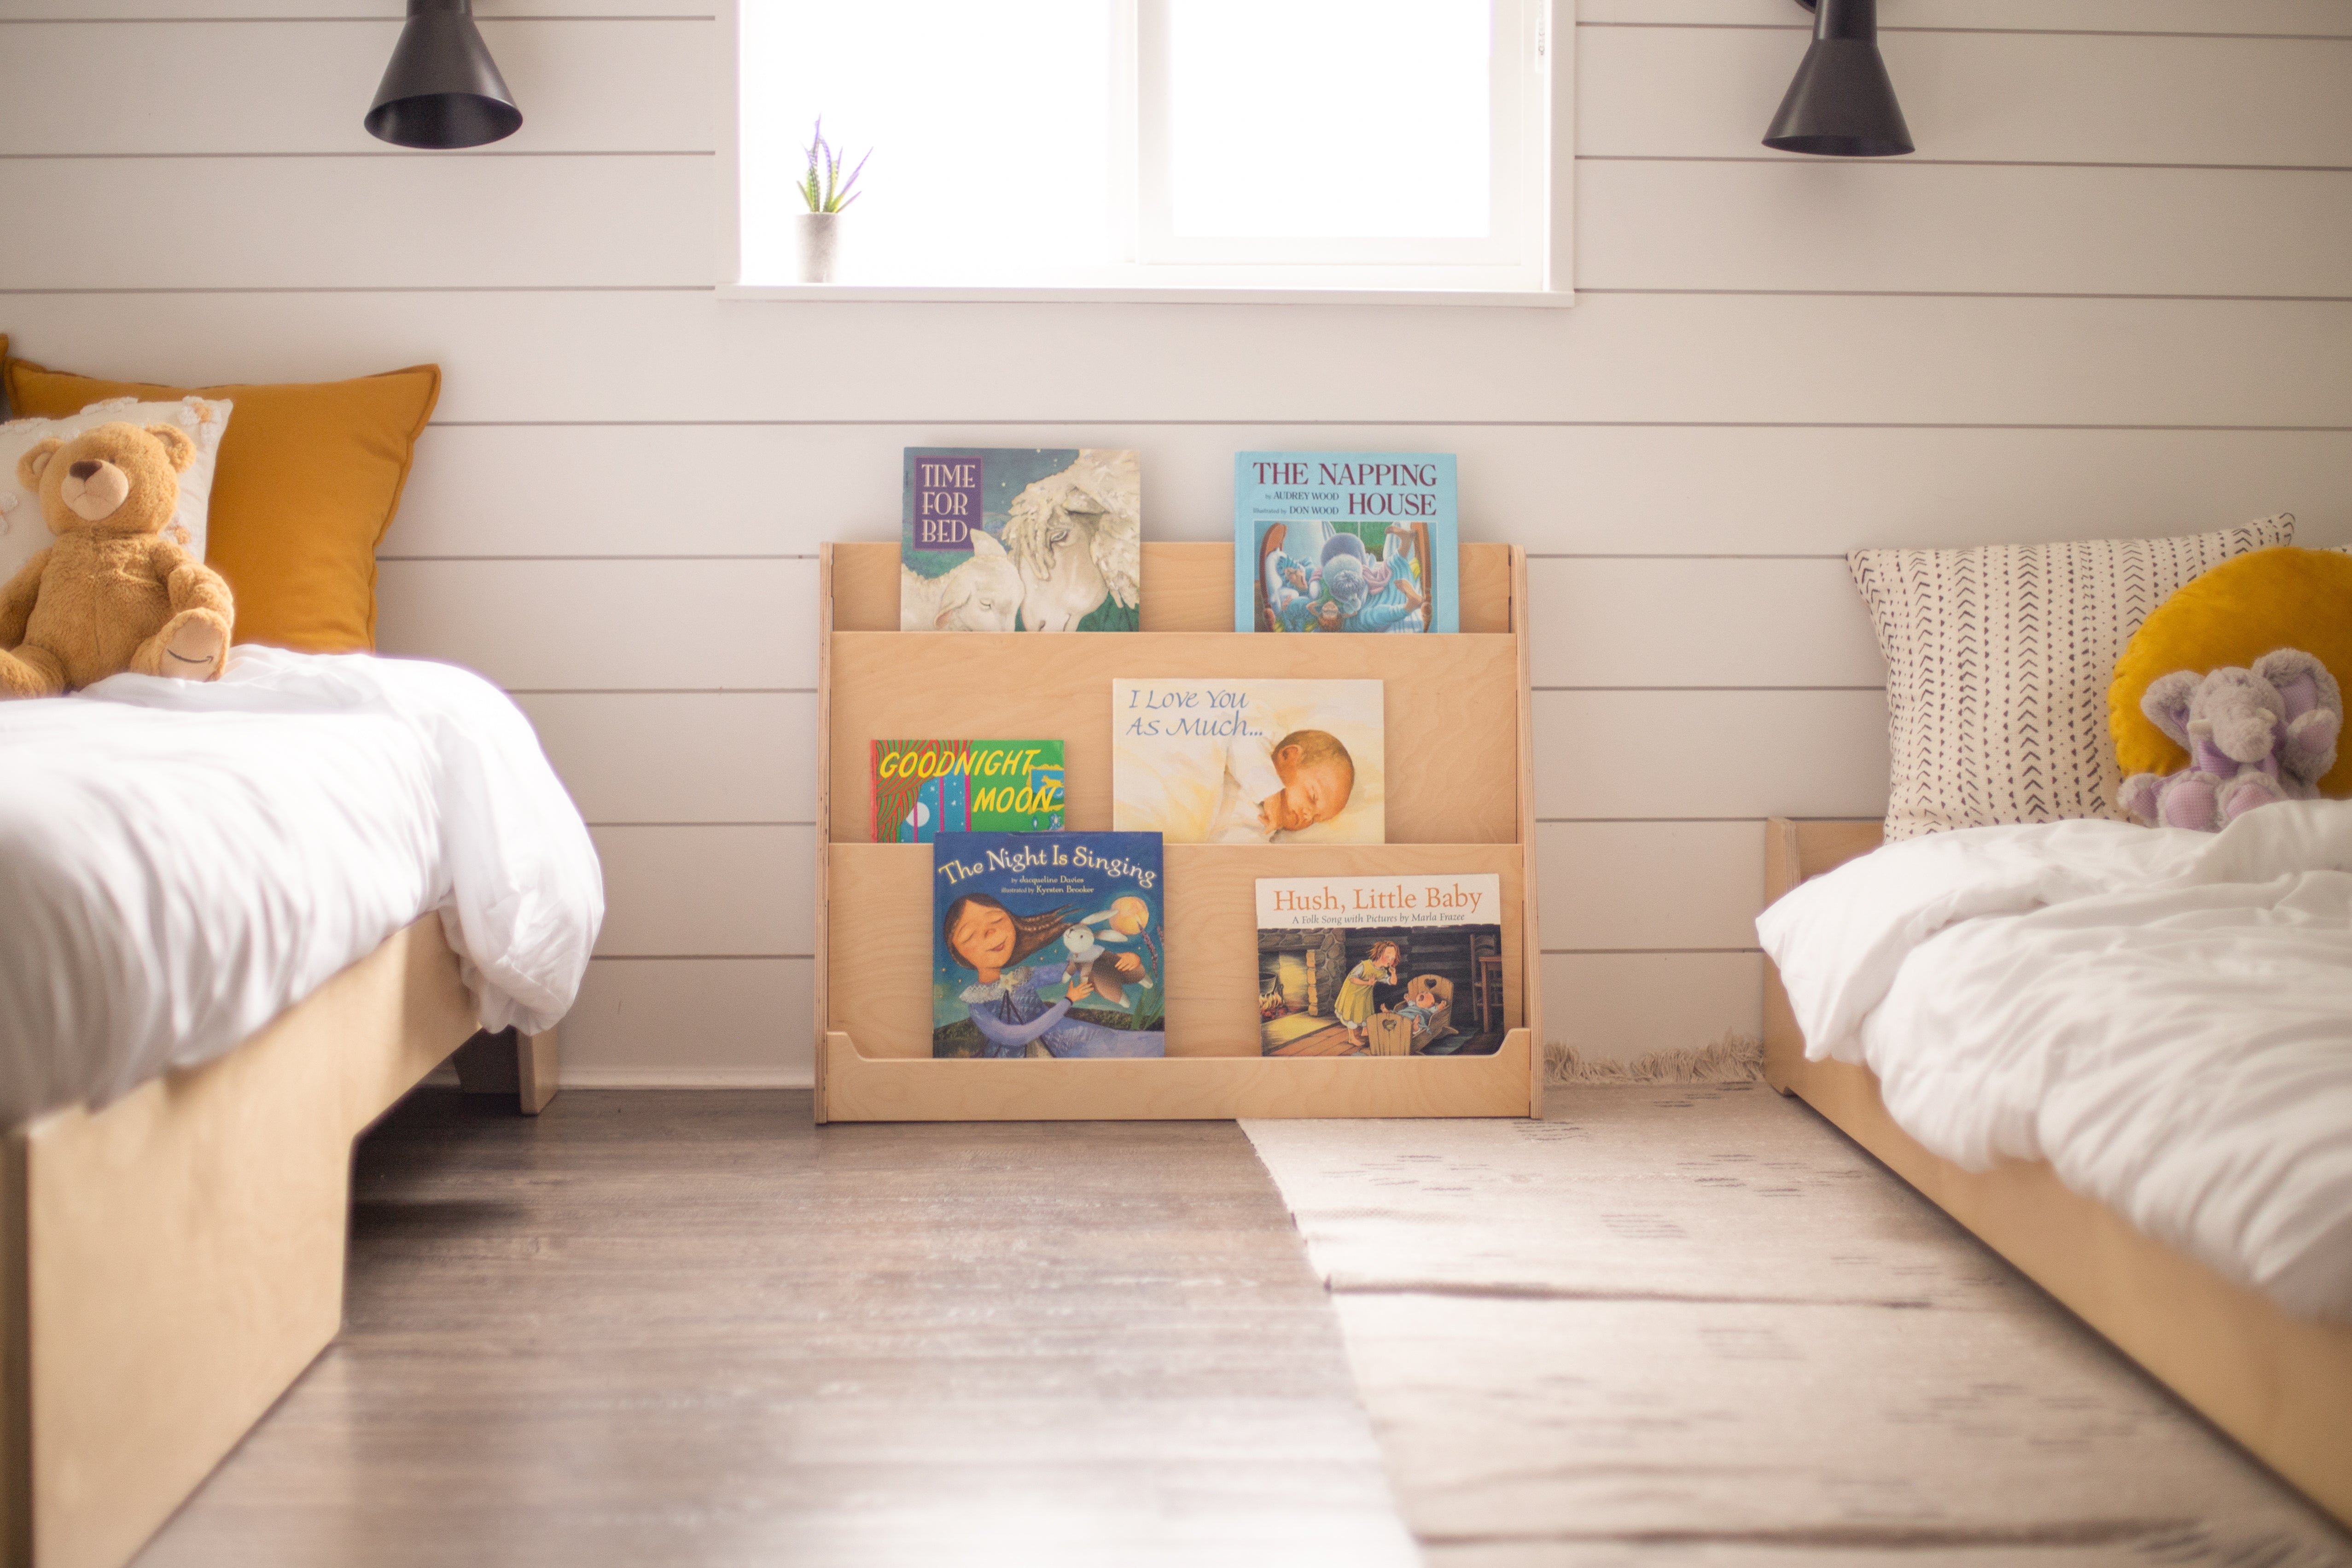 The Montessori Room: Montessori Toys & Furniture Canada